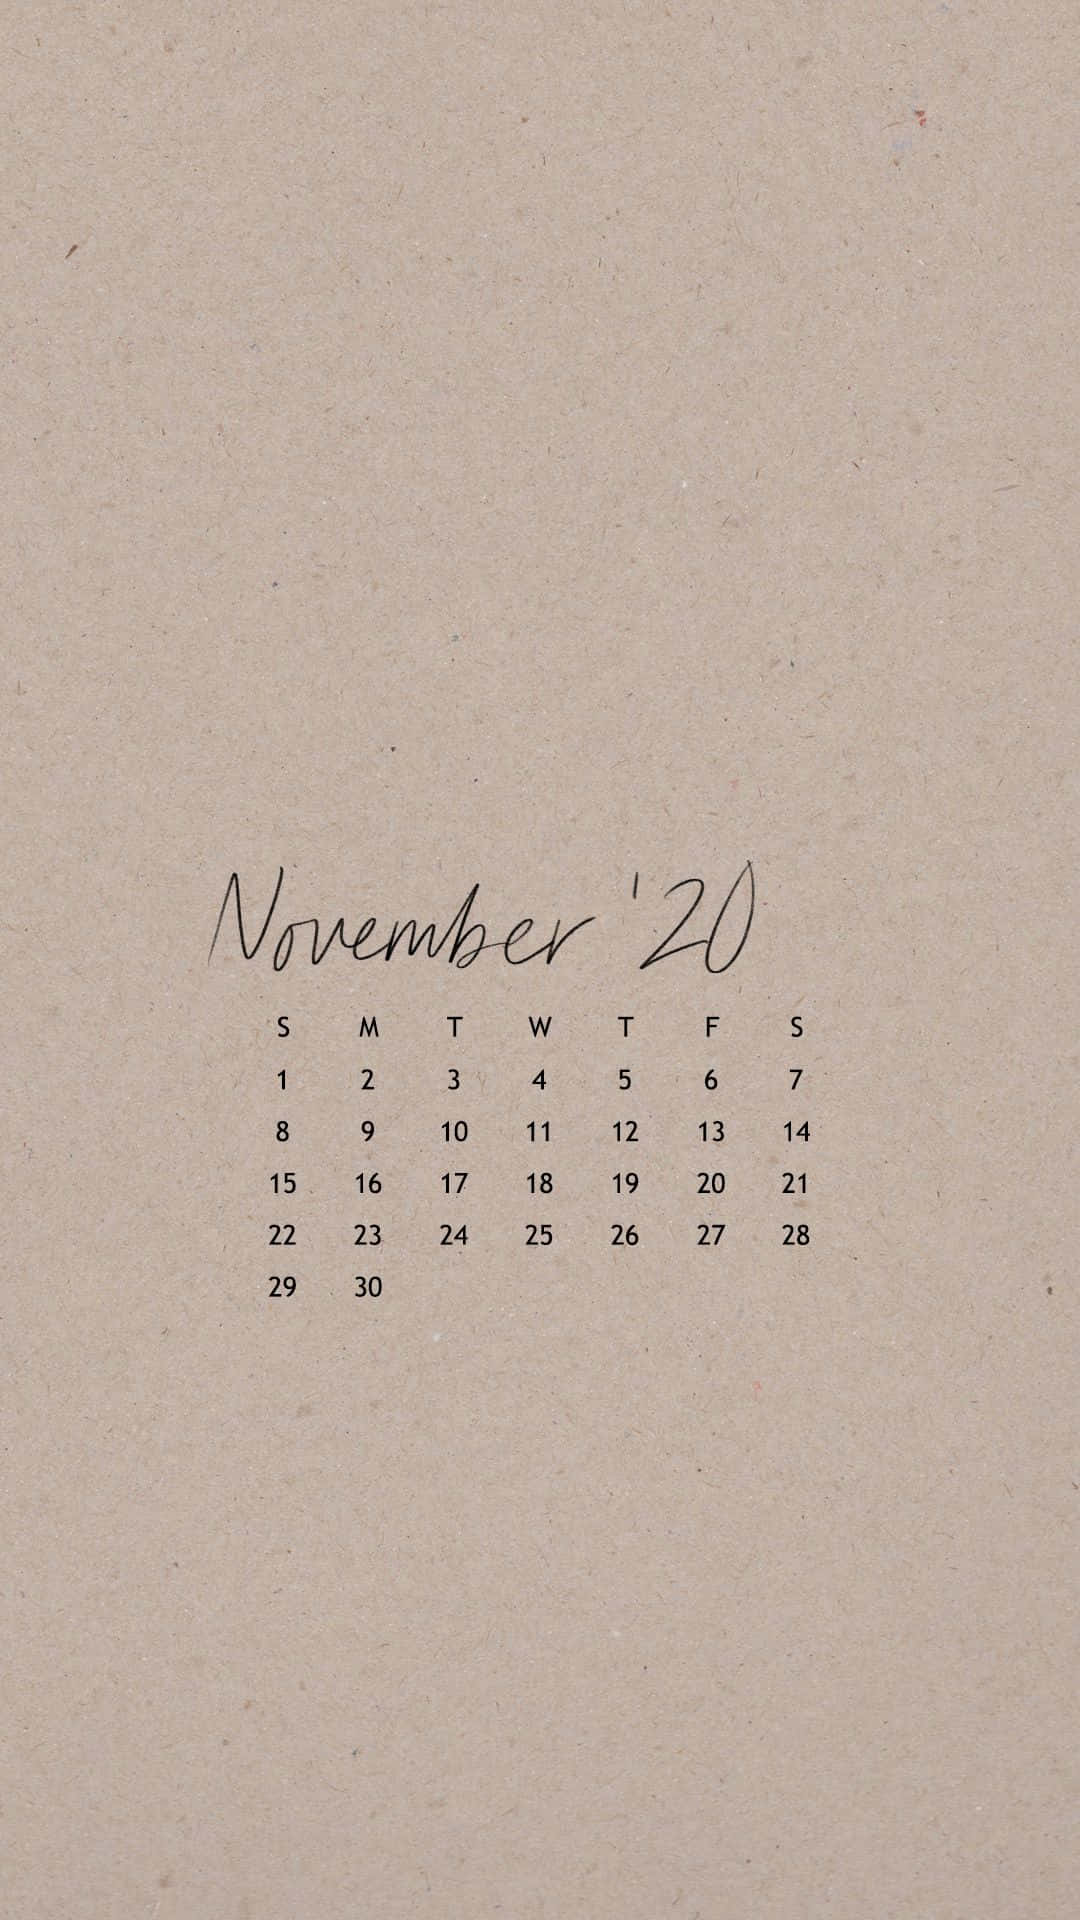 Aesthetic November 2020 Calendar Wallpaper